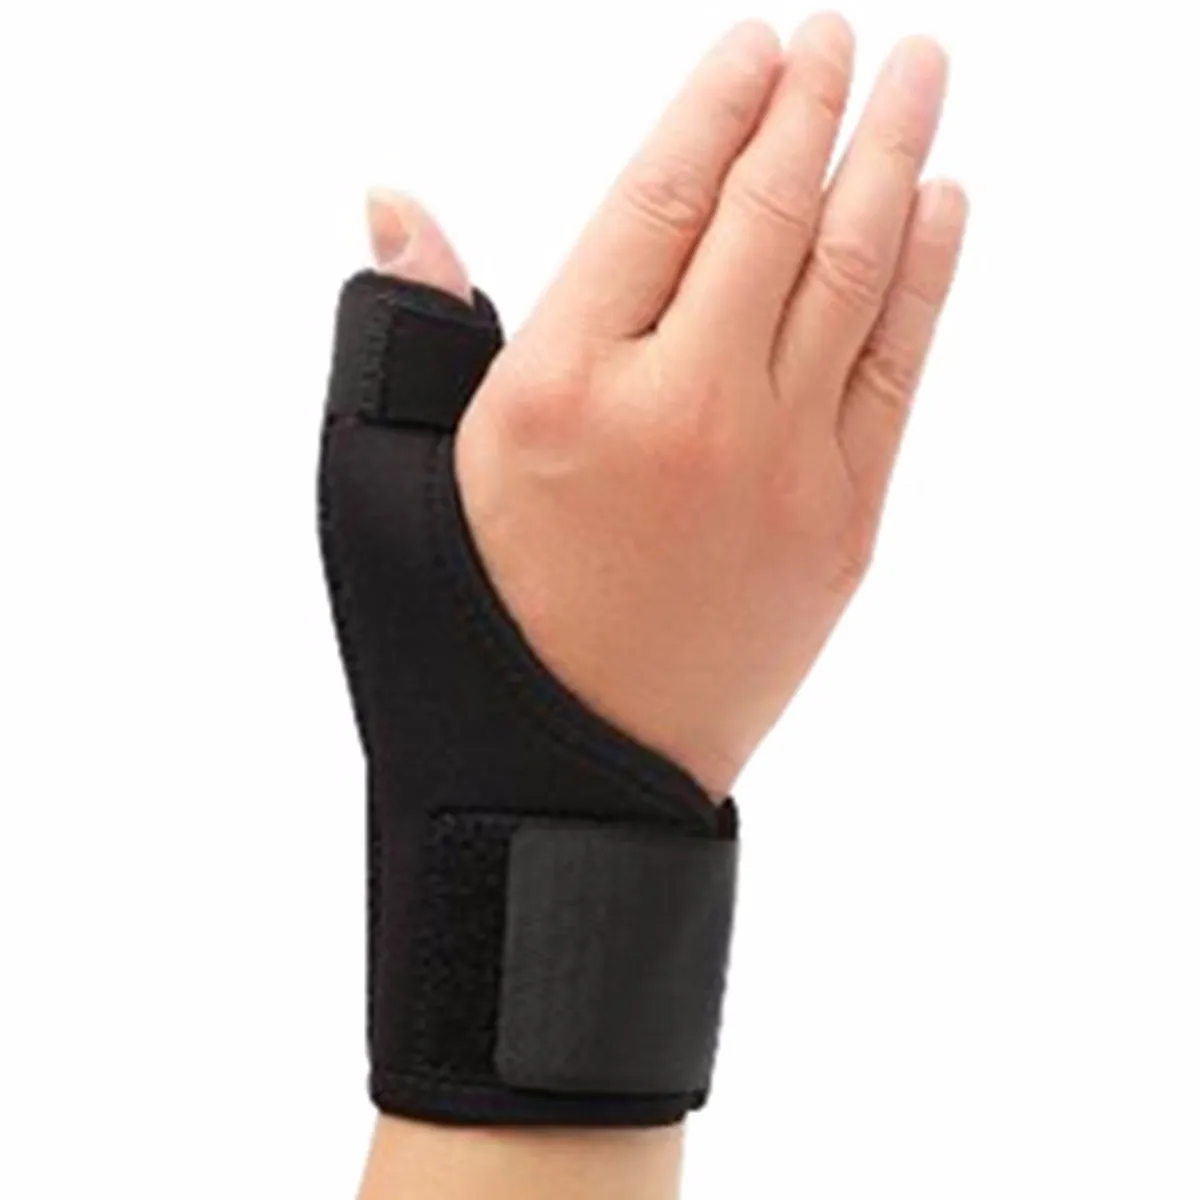 Регулируемое запястье, большой палец, рука опорная Скоба фиксатор Sprain артрит пояс Spica облегчение боли для рук Защита от растяжения пальцев